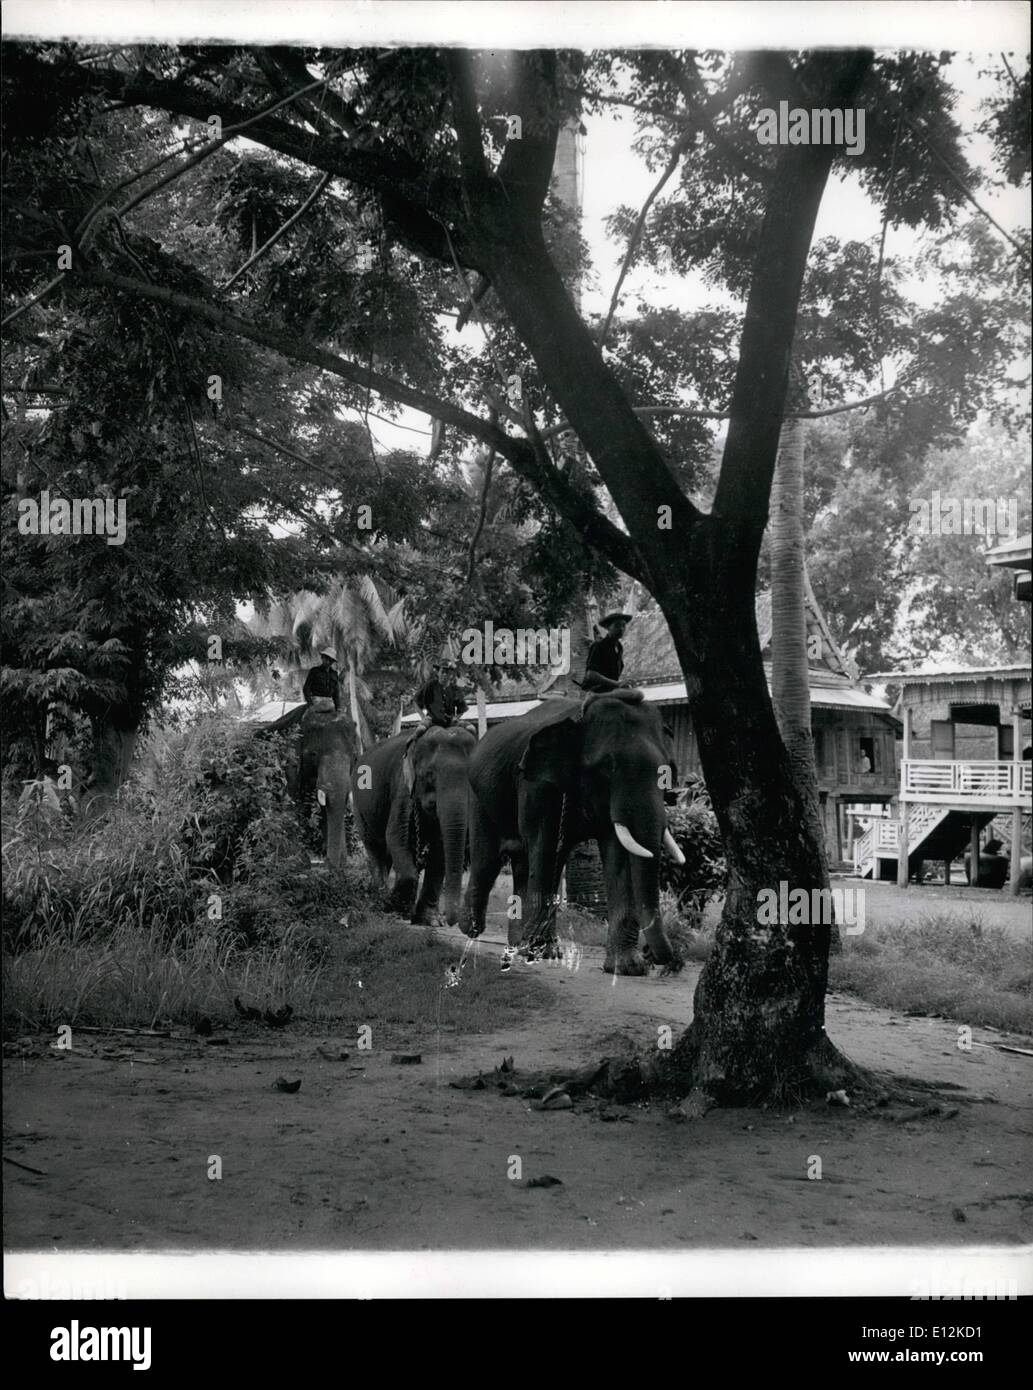 24 février 2012 - L'exploitation forestière ''Gros'' est toujours préféré le tracteur ; une équipe d'éléphants appartenant au Bornéo Trading Company, qui possède de grandes concessions de forêts de teck en Thaïlande est Nakonsawan salon quitter le camp pour une journée de travail dans la forêt. Bref, même défenses indiquent un placid, intelligent, travaillant dur éléphant. ''Gros'' est toujours supérieure à l'entraîneur dans la forêt de teck siamois mais le chien ont à se méfier du frogman voleur, vingtième siècle, la science n'a toujours pas fourni une meilleure aide à l'industrie de la Thaïlande en teck ''Gros'' Banque D'Images